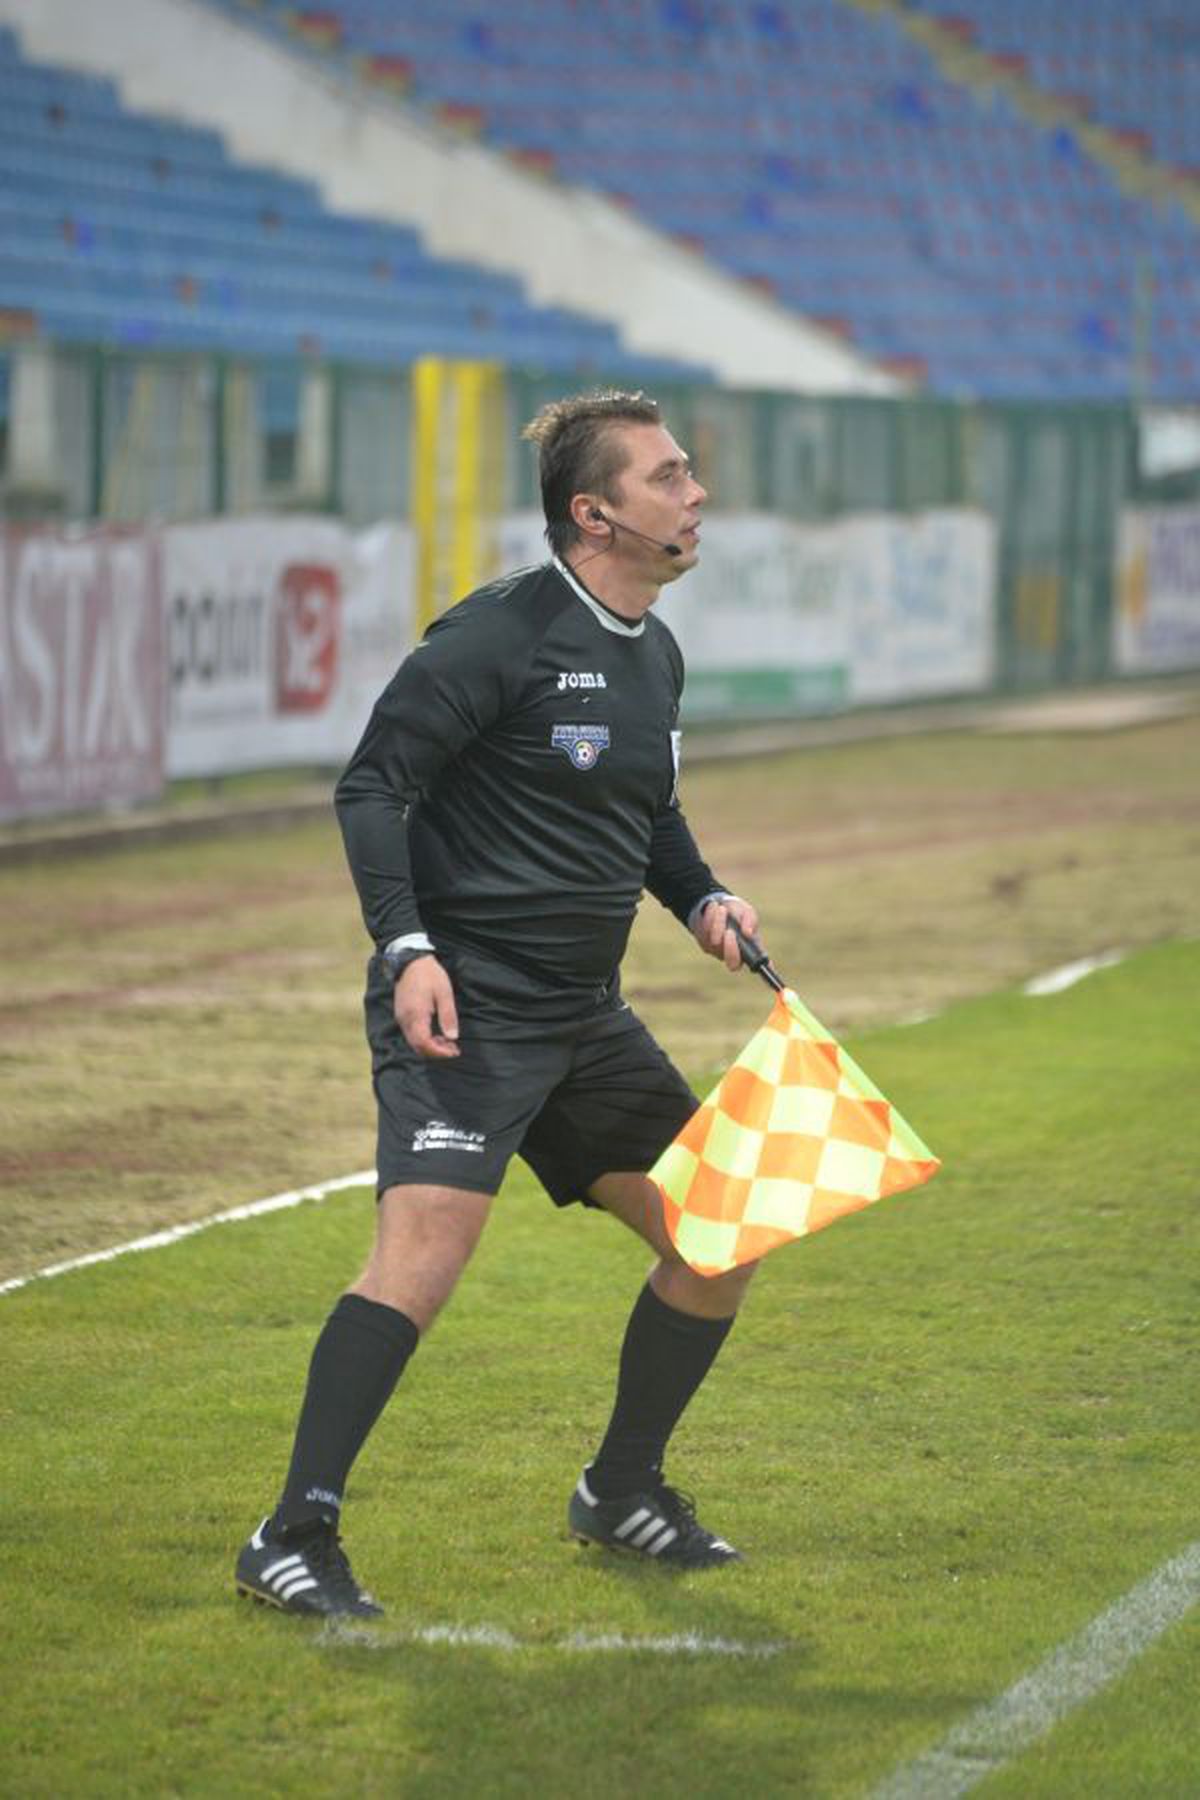 FC Botoșani - FC Voluntari 1-1 » Puncte împărțite în al doilea duel al zilei! Cum arată clasamentul ACUM